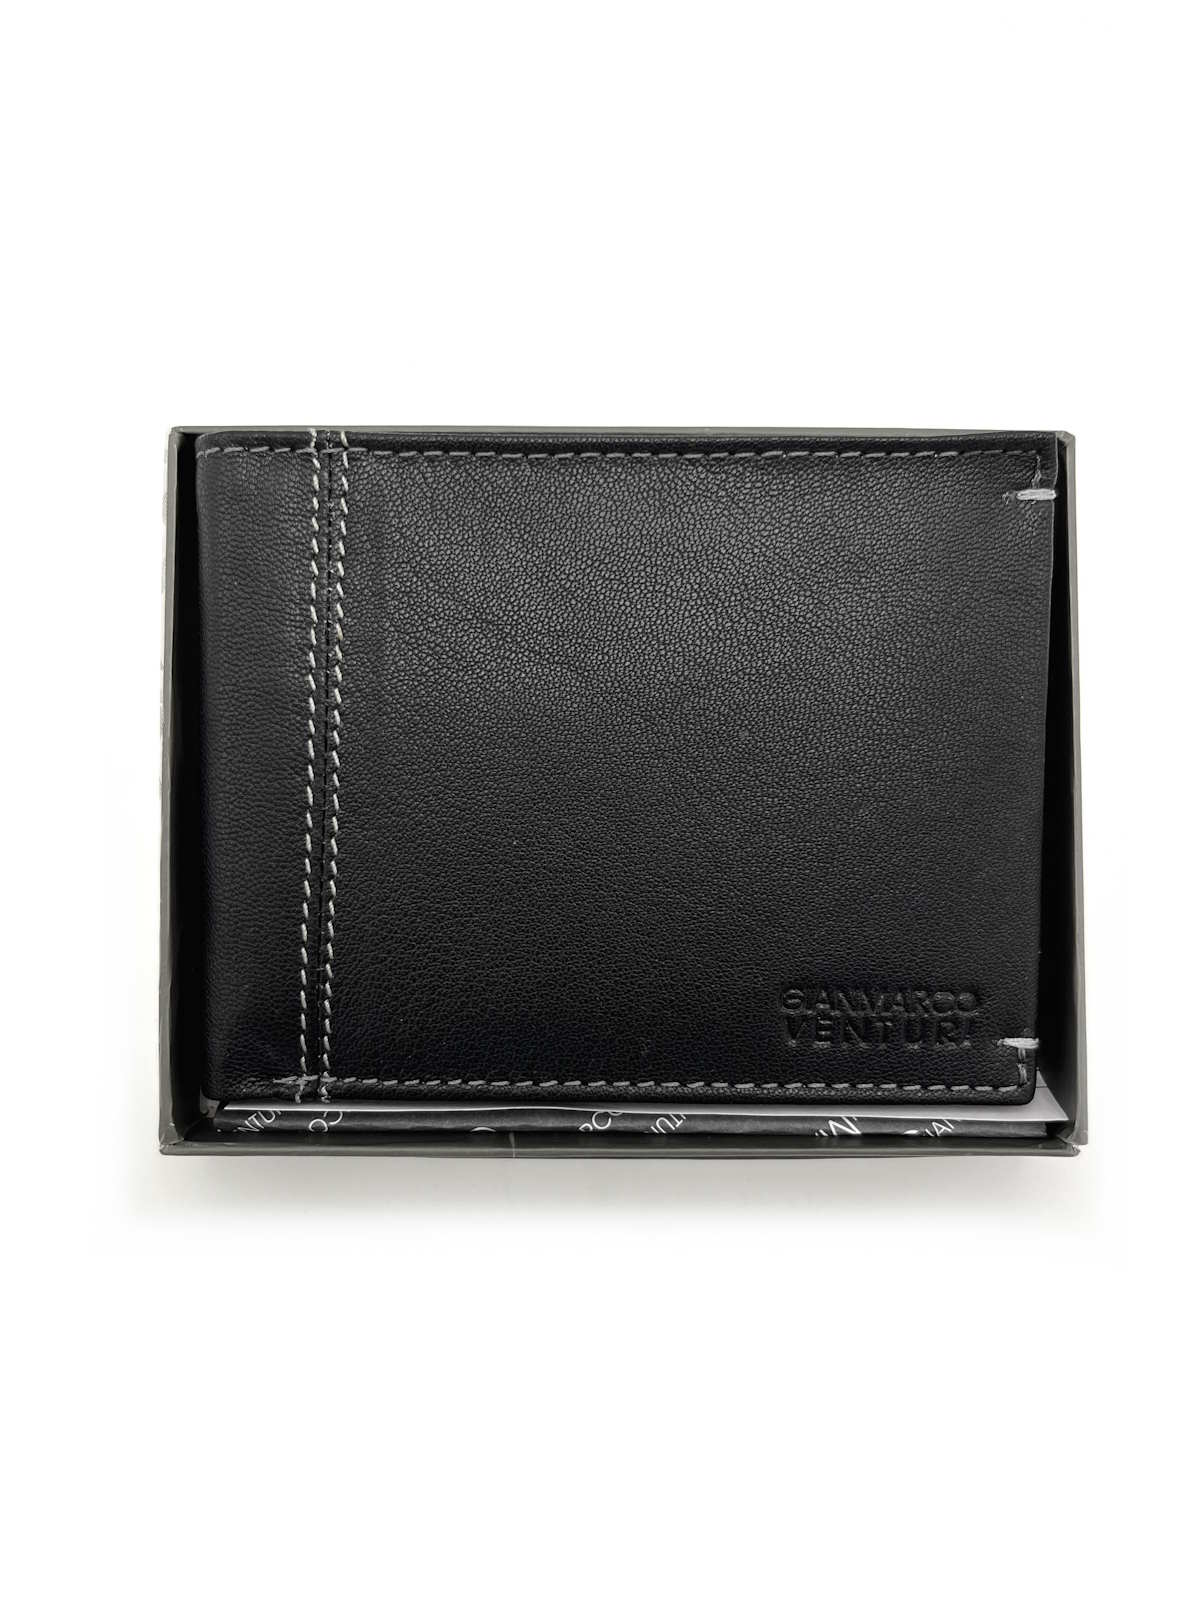 Genuine leather Wallet, Brand GMV, art. GMV4009-2